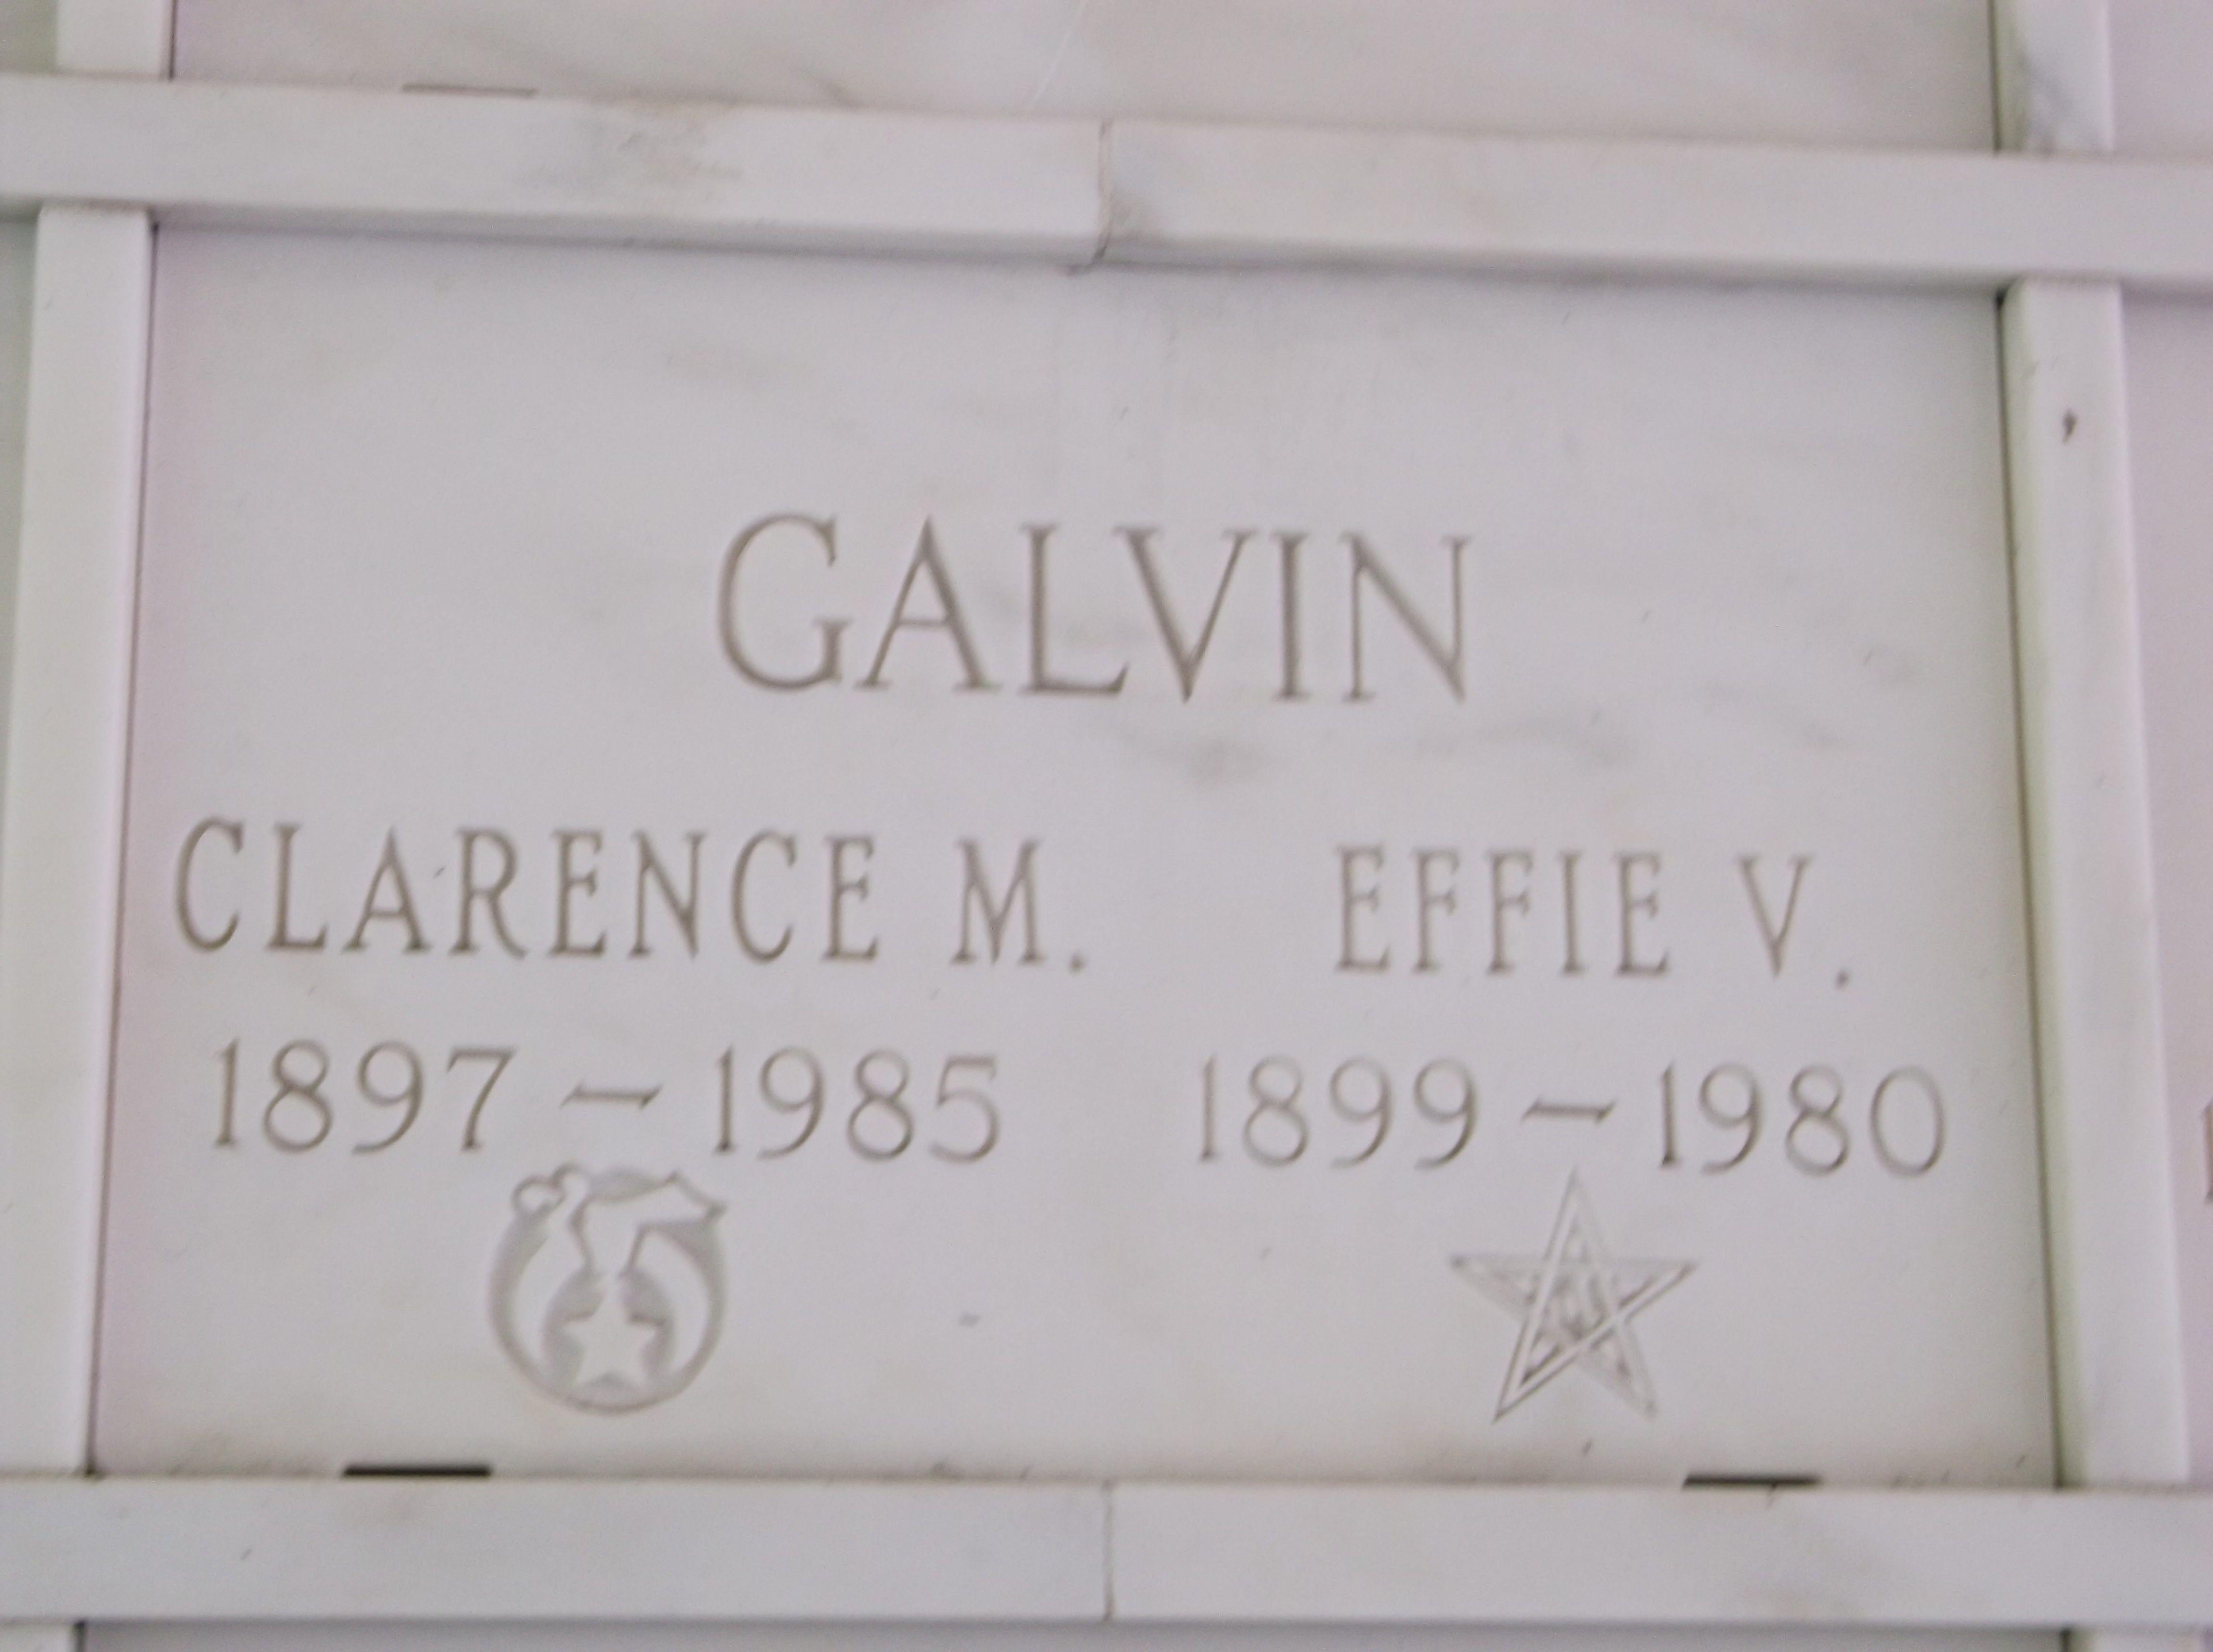 Effie V Galvin